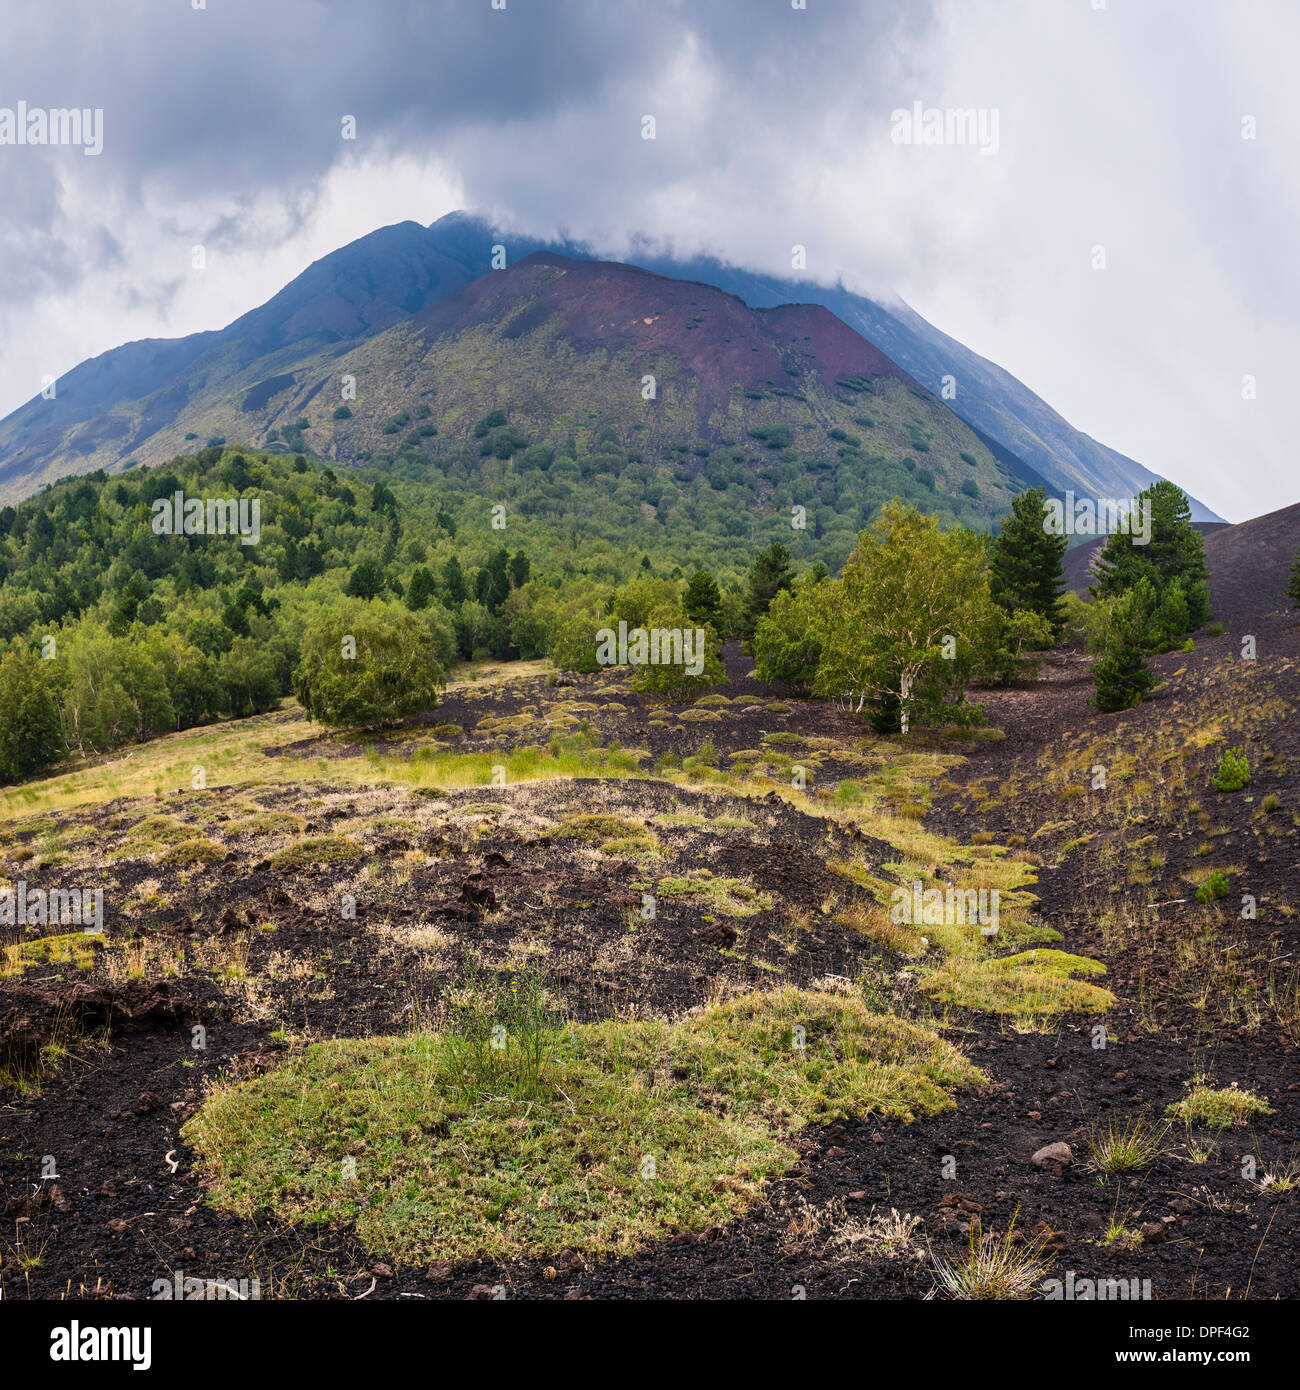 El volcán Etna, casco de lava de una erupción, Sitio del Patrimonio Mundial de la UNESCO, Sicilia, Italia, Europa Foto de stock